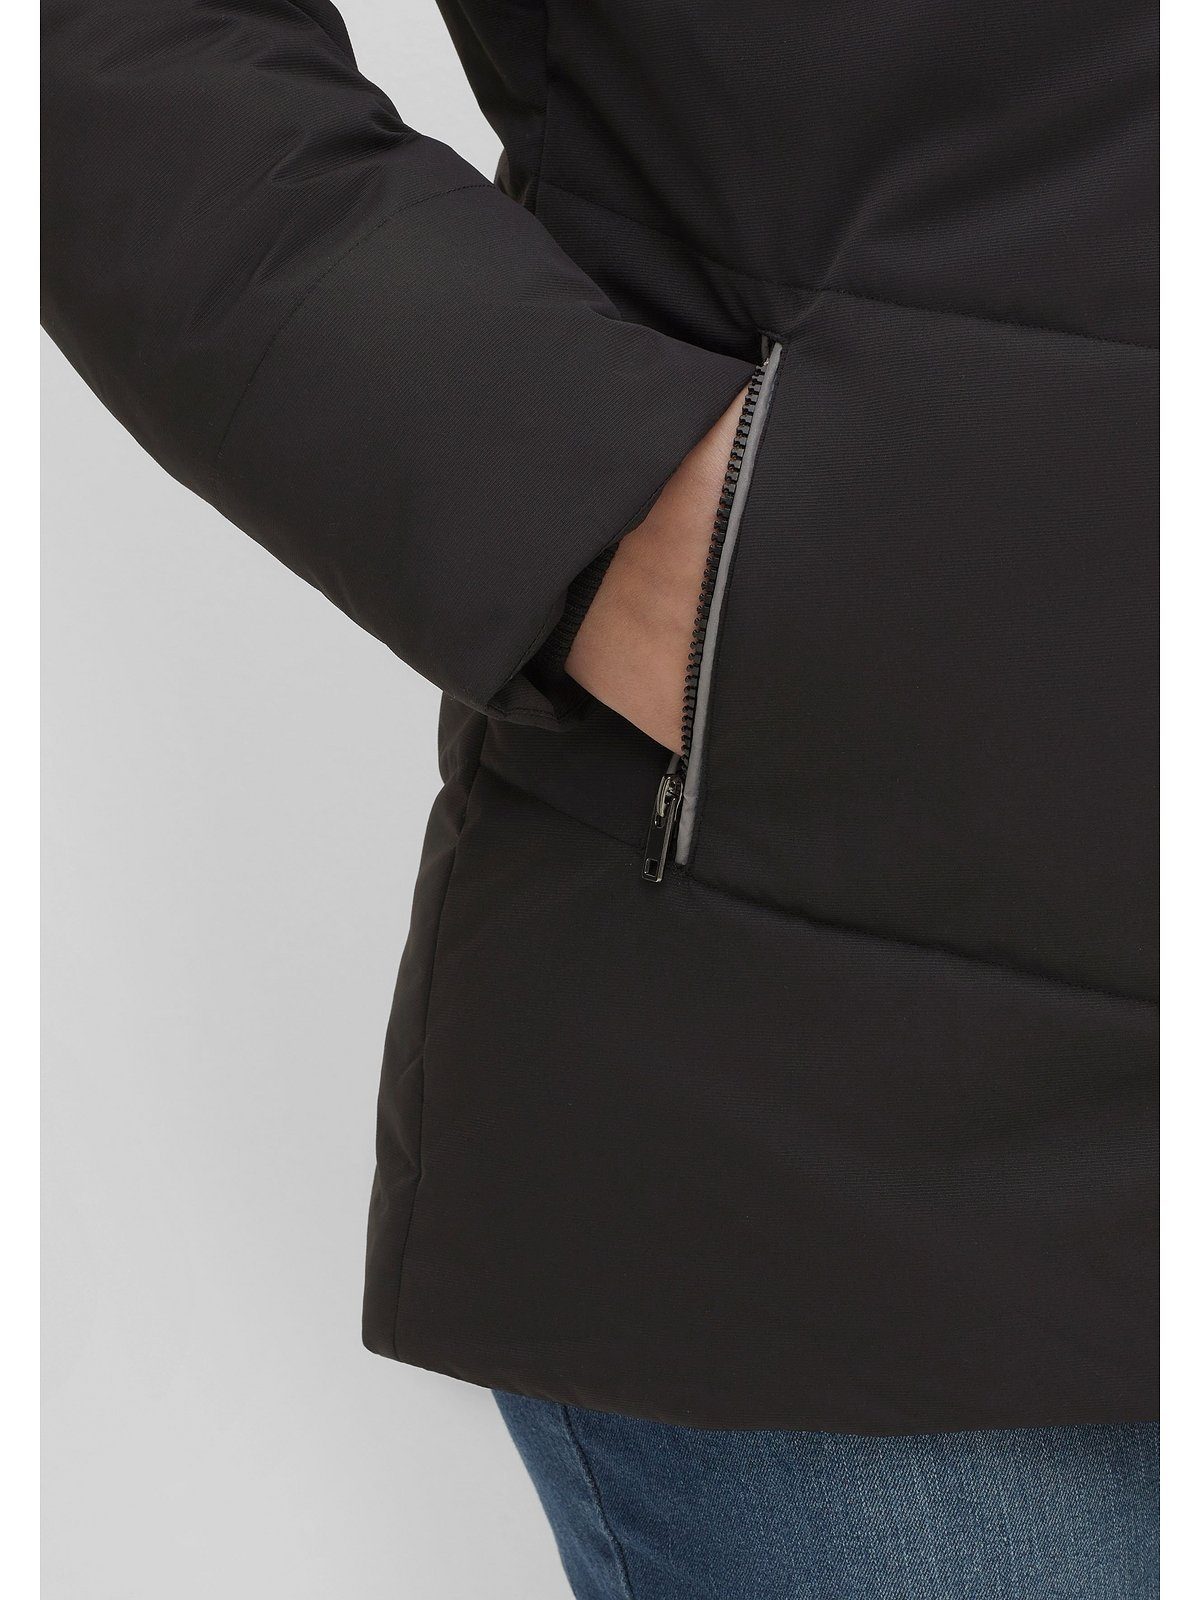 Material Stehkragen, Sheego strukturiertes Outdoorjacke leicht mit Größen Große schwarz